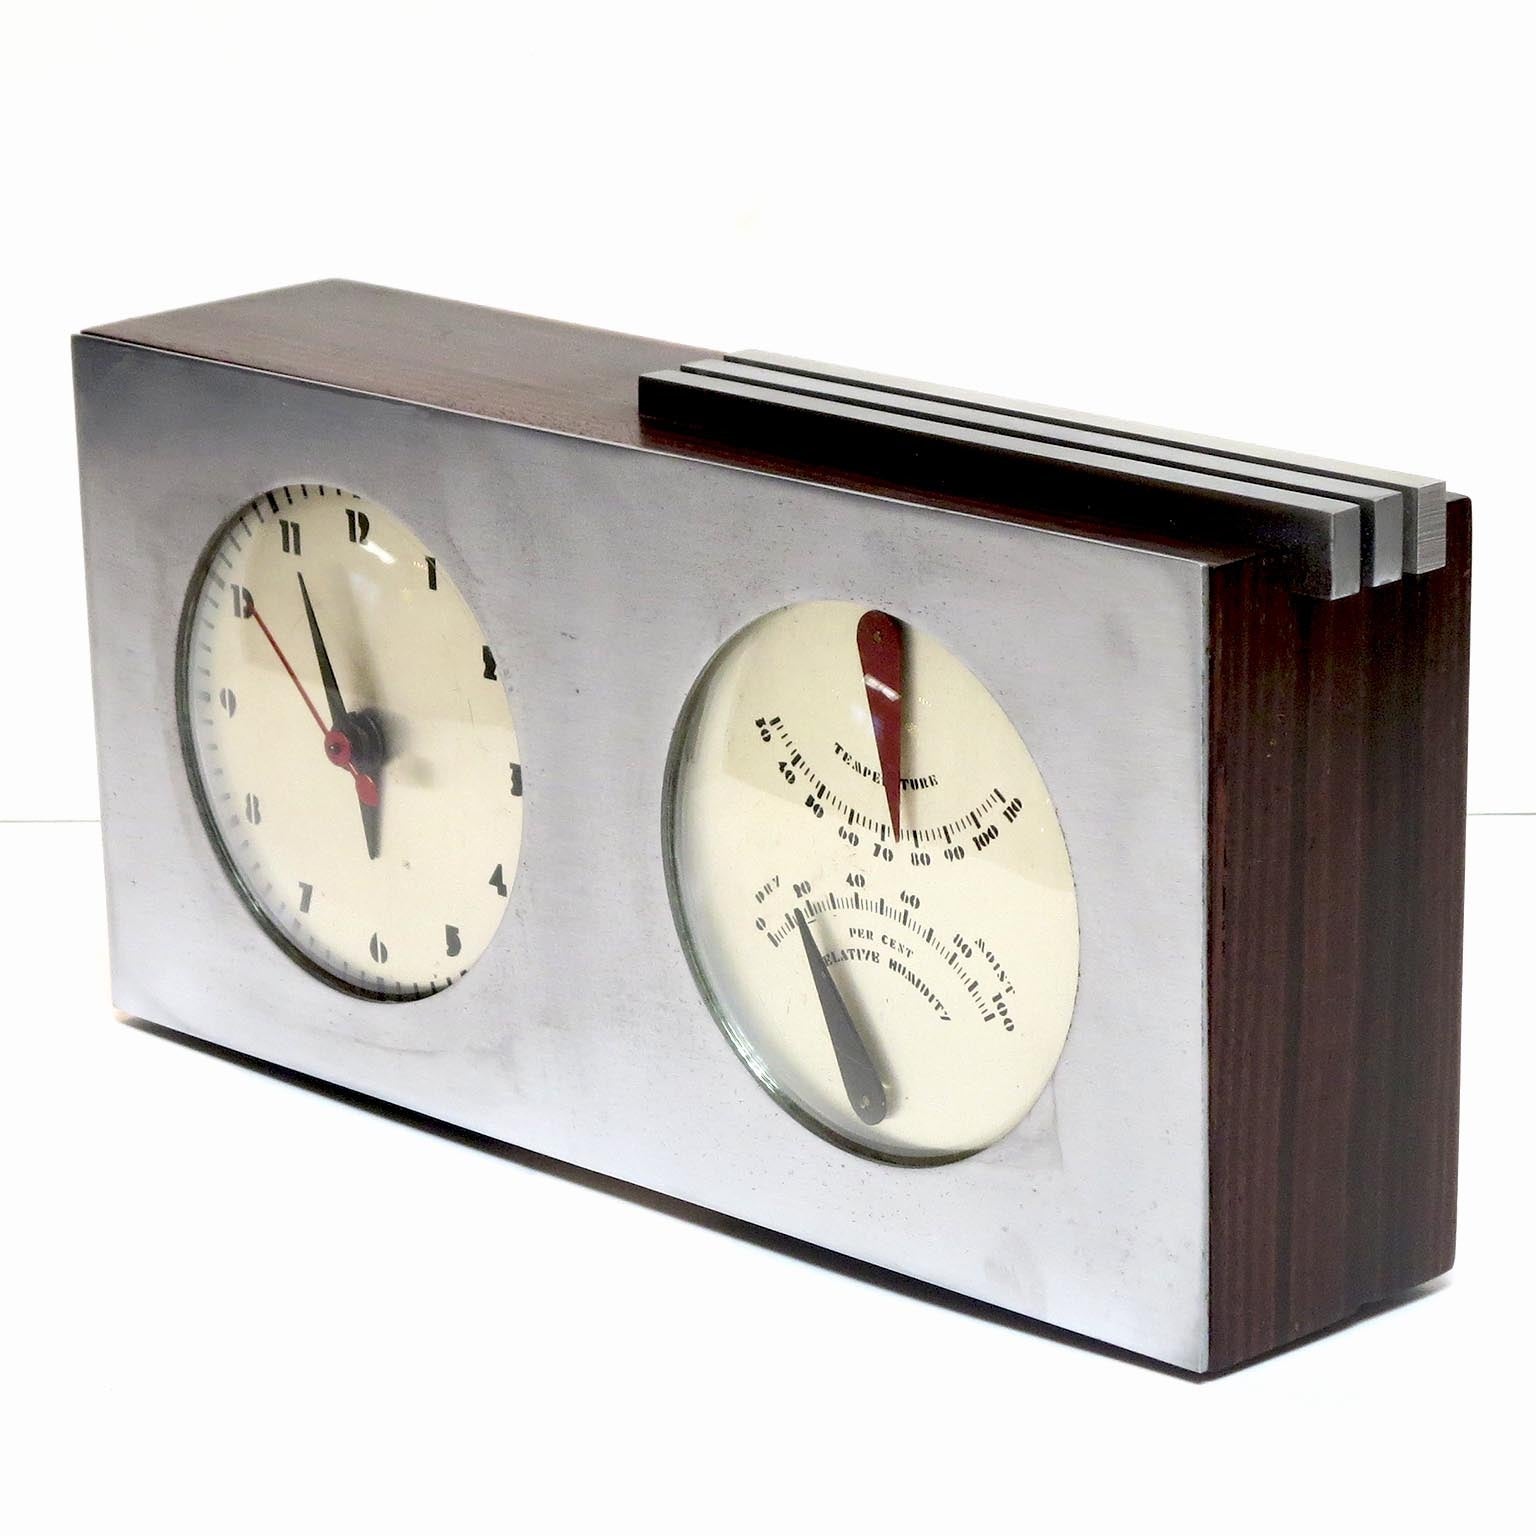 Gilbert Rohde / Herman Miller Art Deco Table Clock and Barometer